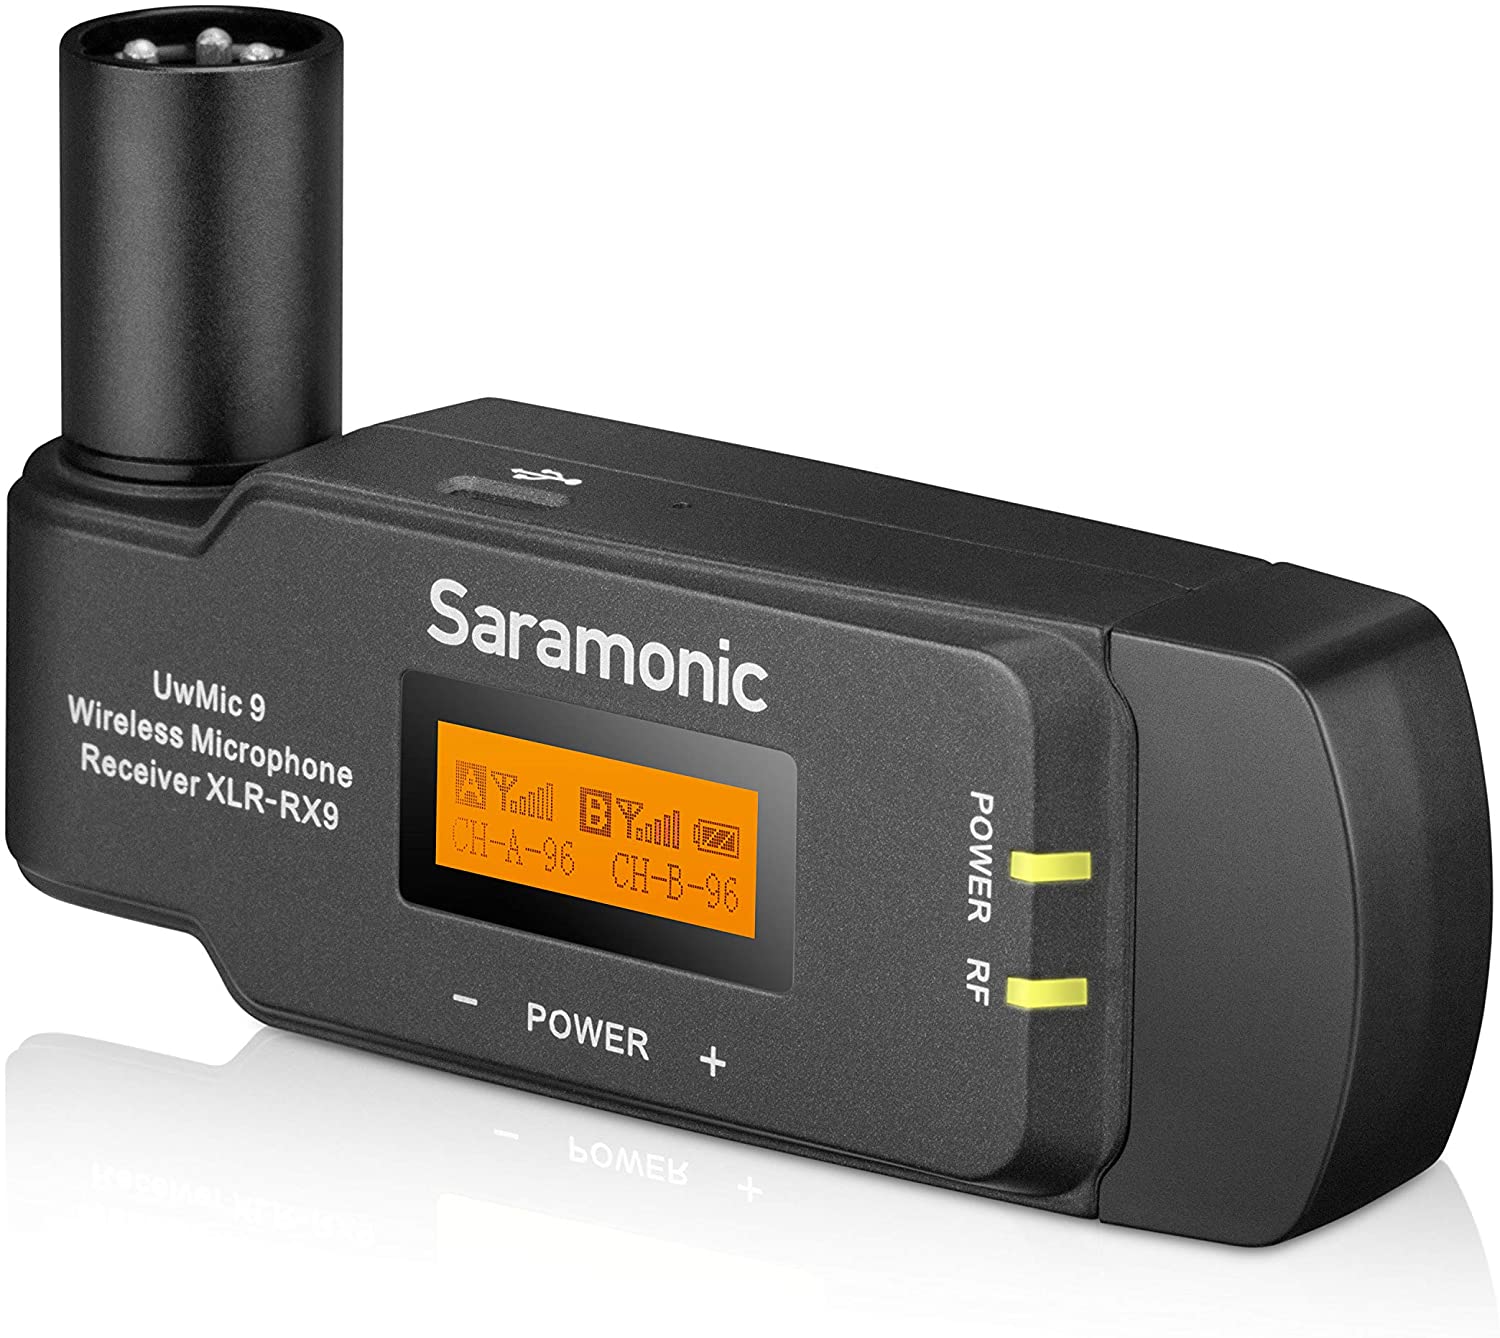 گیرنده دو کاناله RX-XLR9 می تواند مستقیماً به ورودی XLR یک دوربین فیلمبرداری حرفه ای، میکسر یا ضبط کننده صدا متصل شود